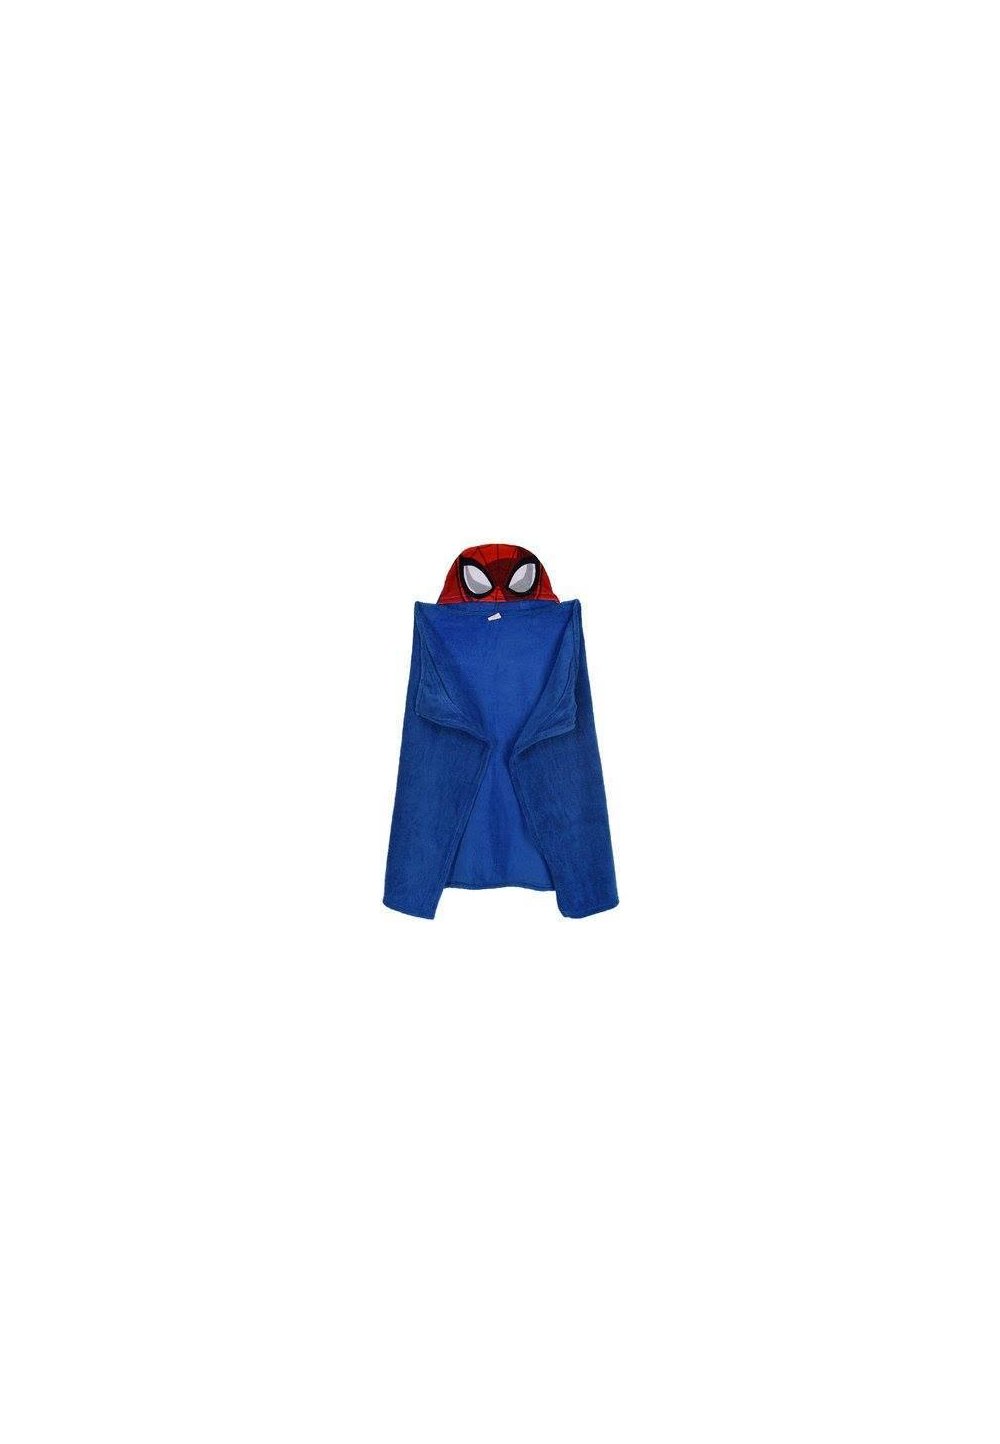 Paturica, pluss cu gluga, albastra, Spider Man, 80 x 120 cm Prichindel